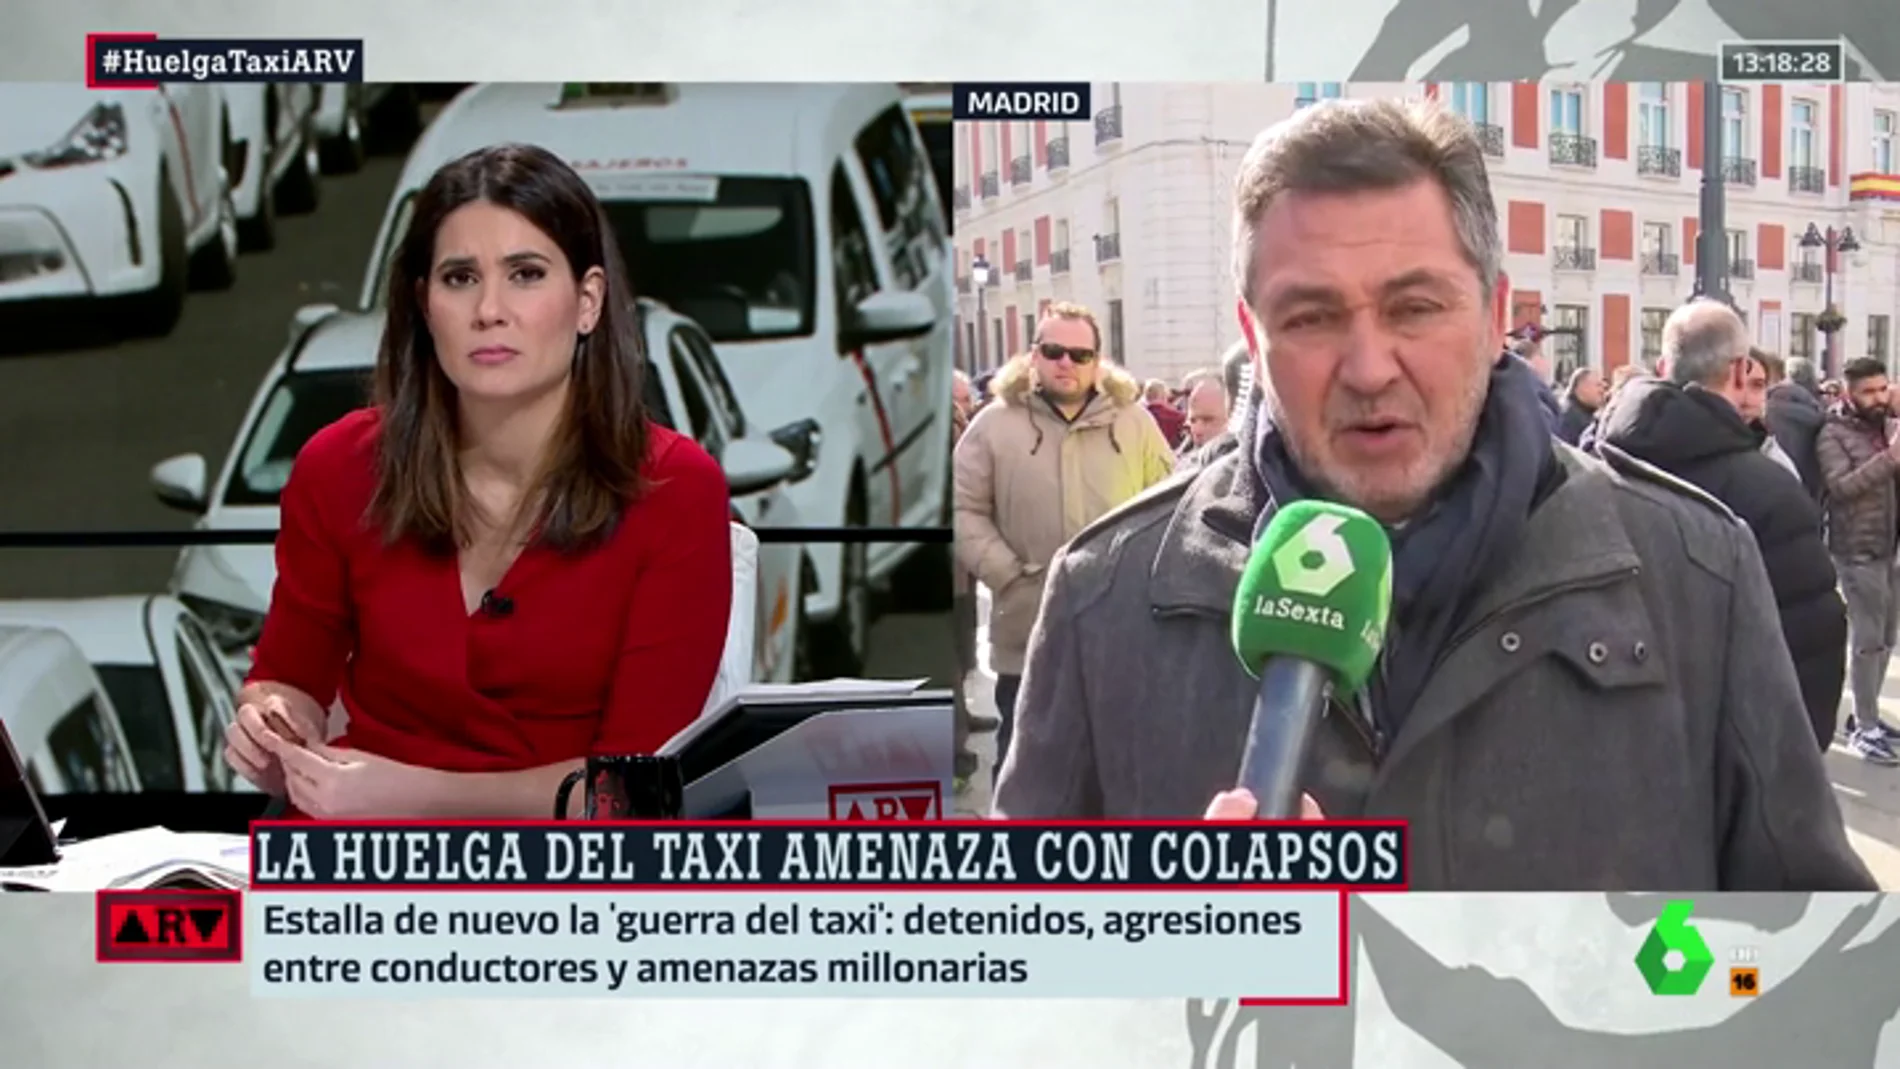 Julio Sanz (Federación del Taxi): "No justificamos la violencia, pero el responsable es quien ha llevado a las familias a una situación límite"